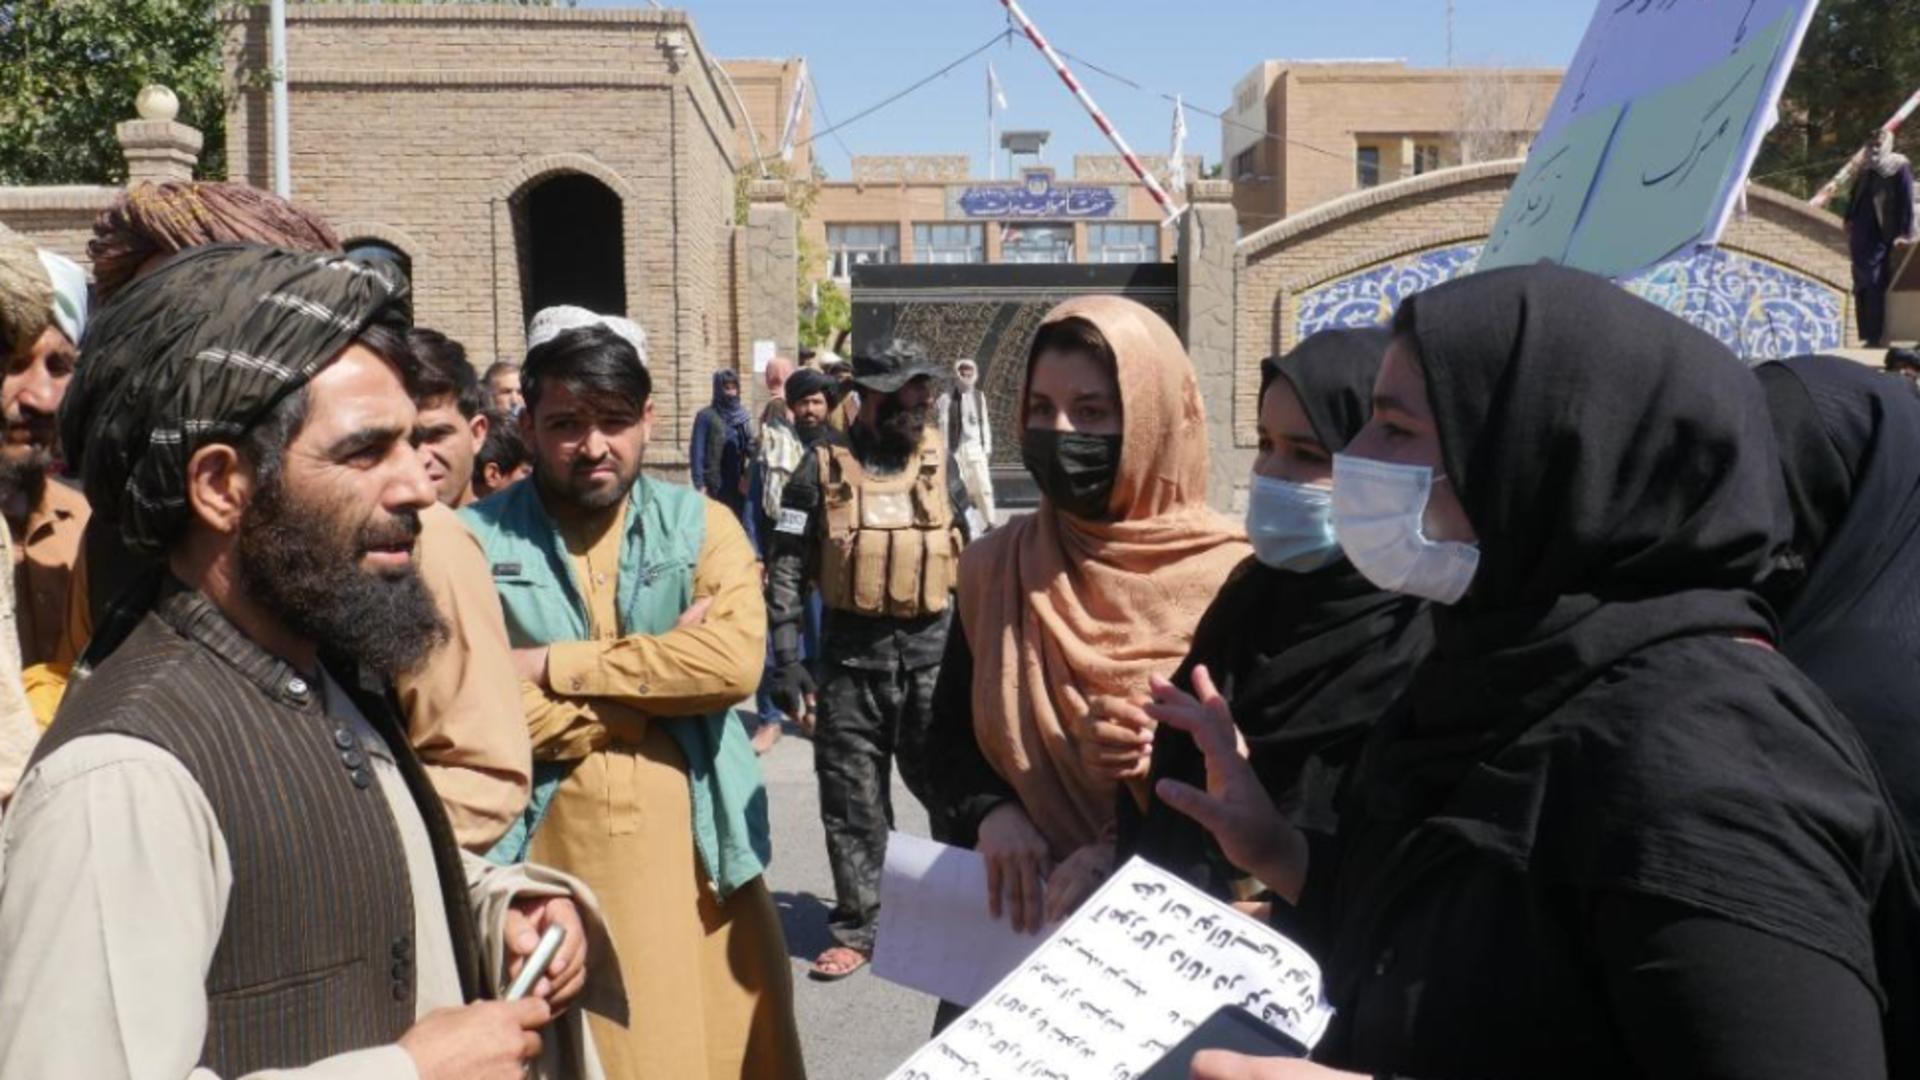 FEMEILE din Afganistan - proteste oprite VIOLENT de talibani Foto: Twitter.com